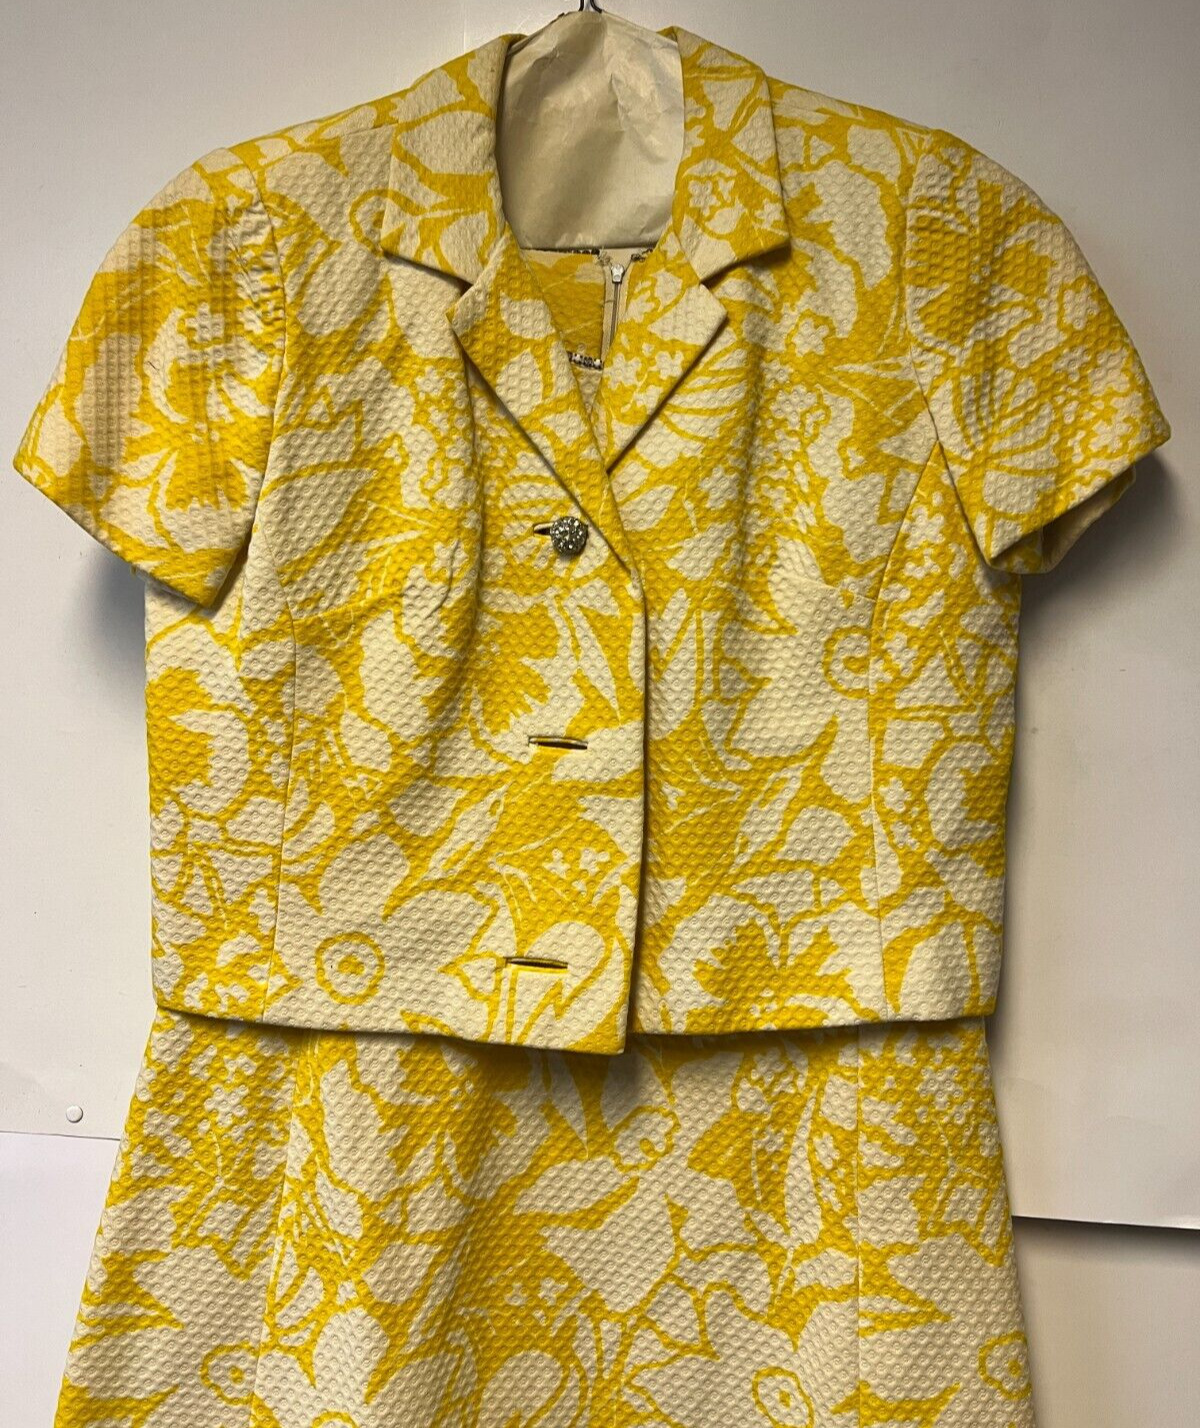 Vintage Lita Shop Bright Yellow/White Sleeveless … - image 2